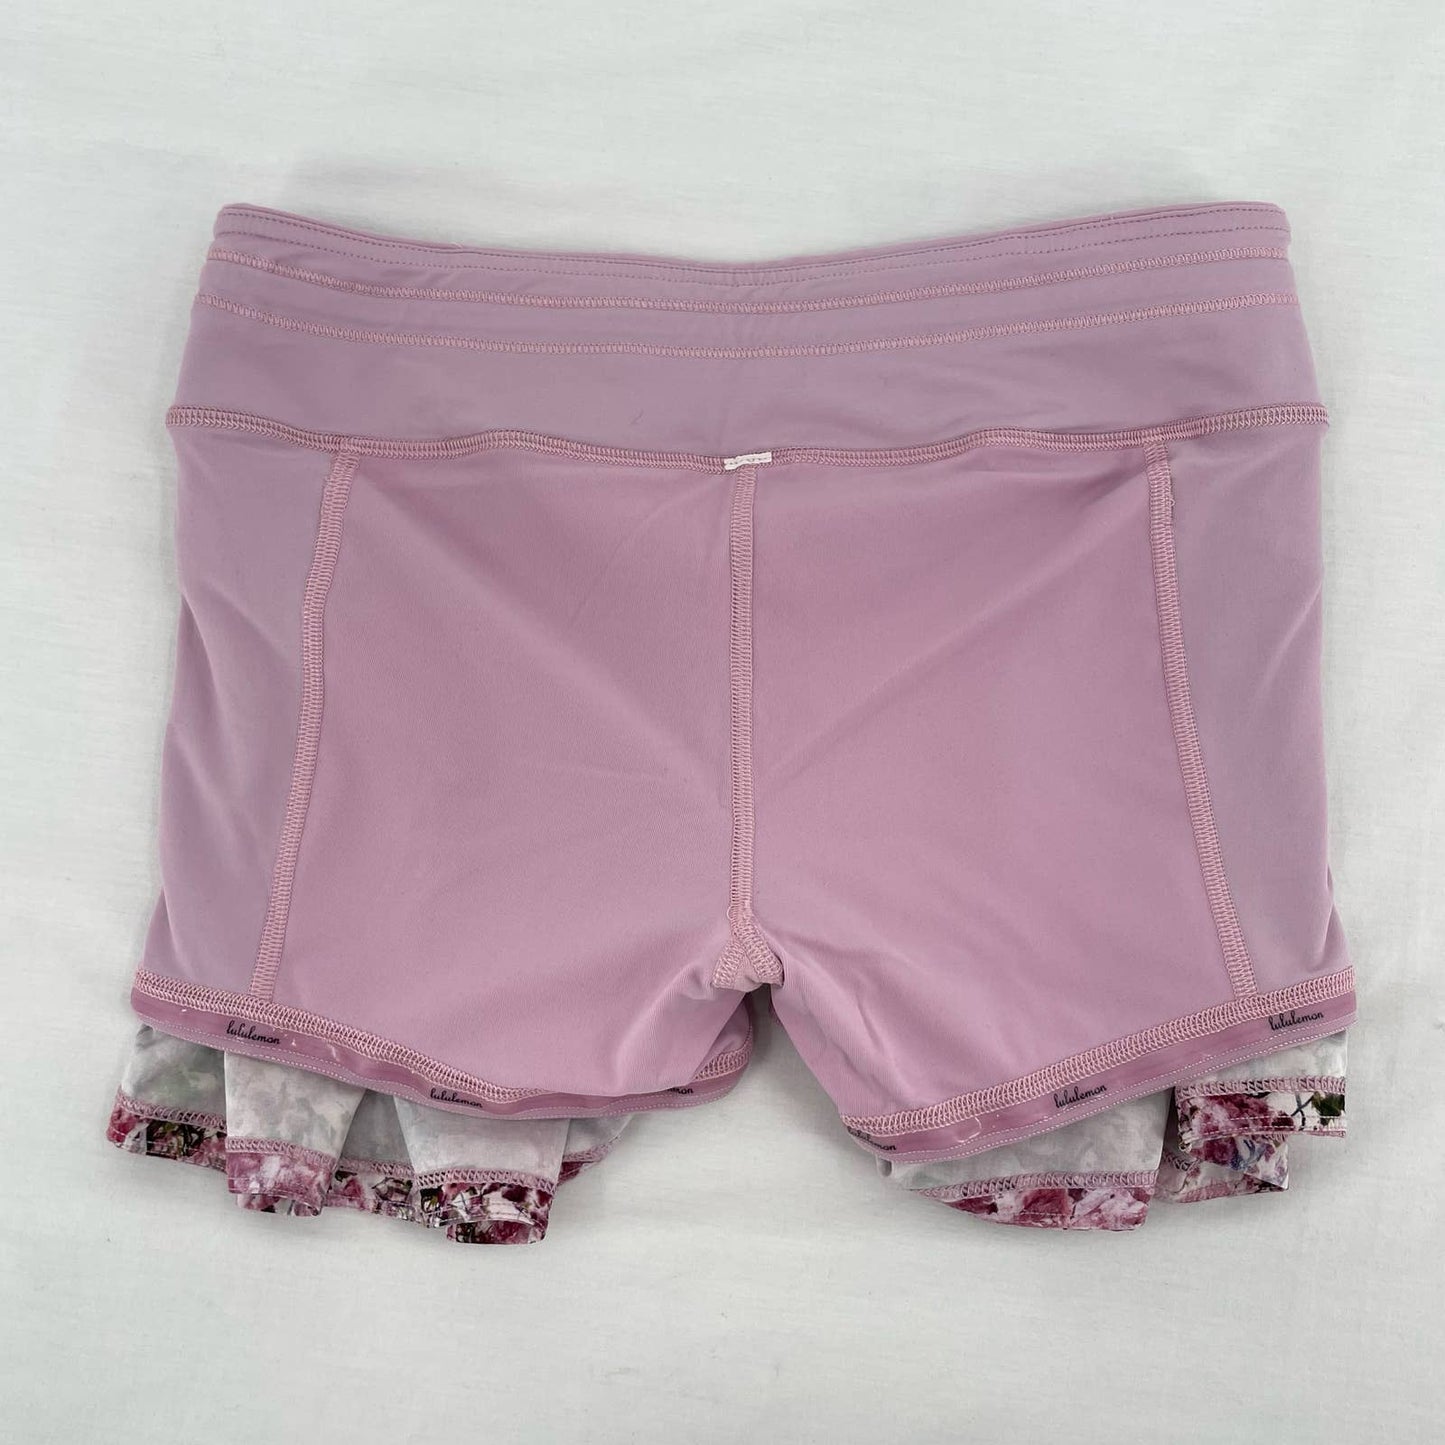 Lululemon Pace Rival Skirt Pink Blossom Spritz Floral Active Tennis Skort Size 4